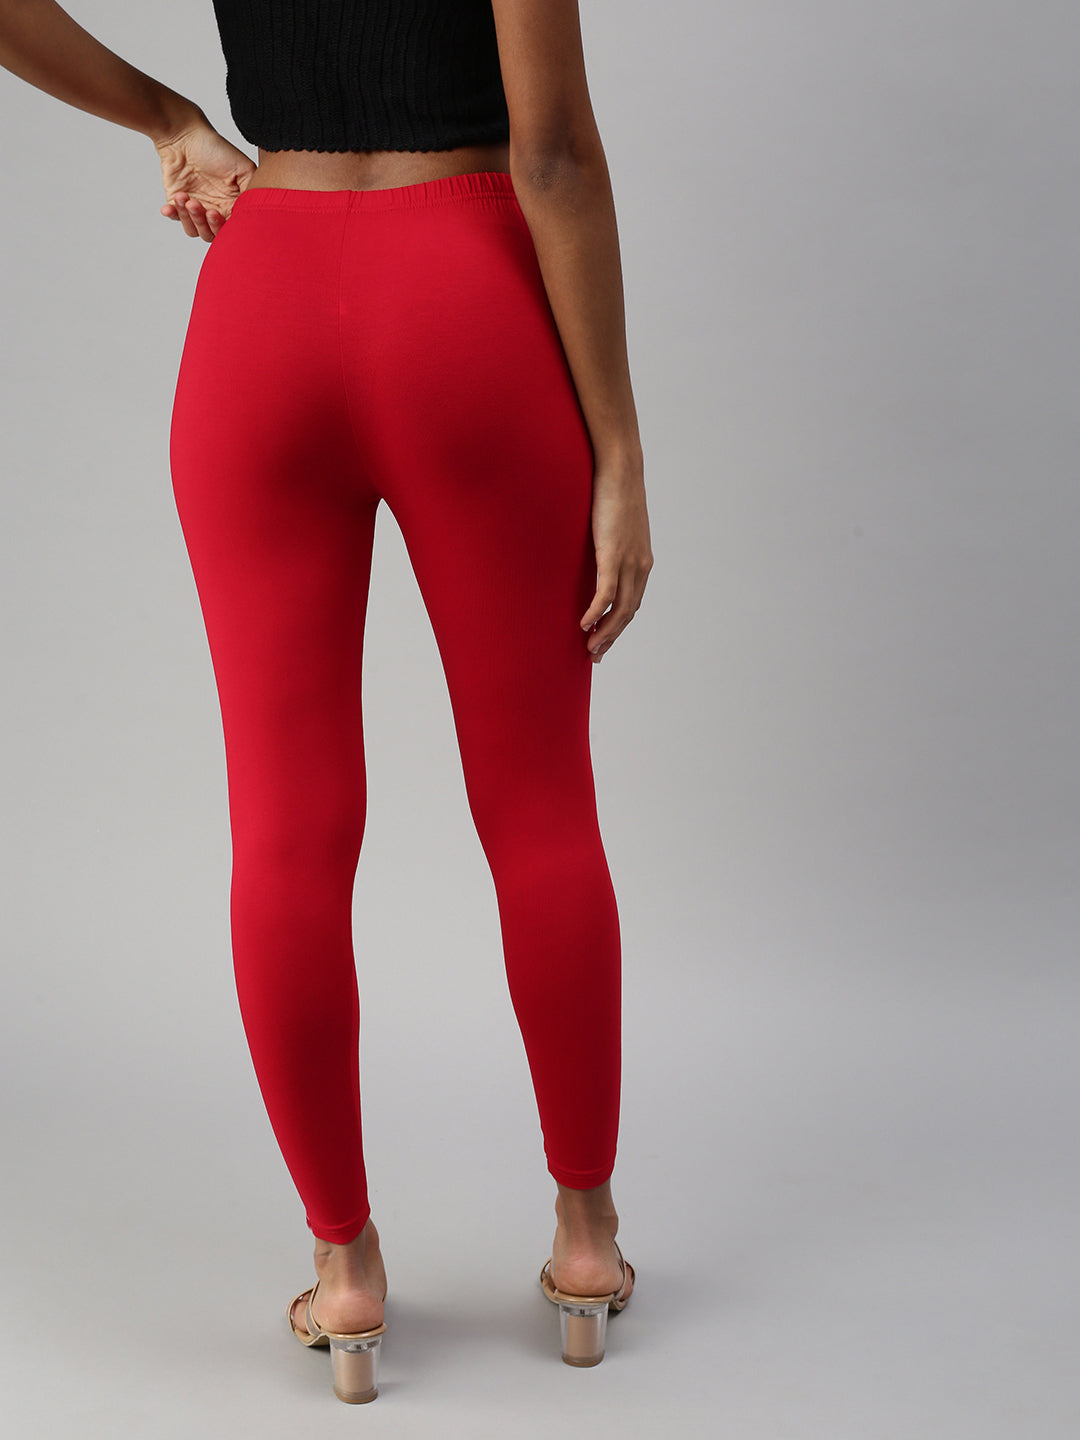 Buy Rebel Color legging Brick Red womens leggings at Amazon.in